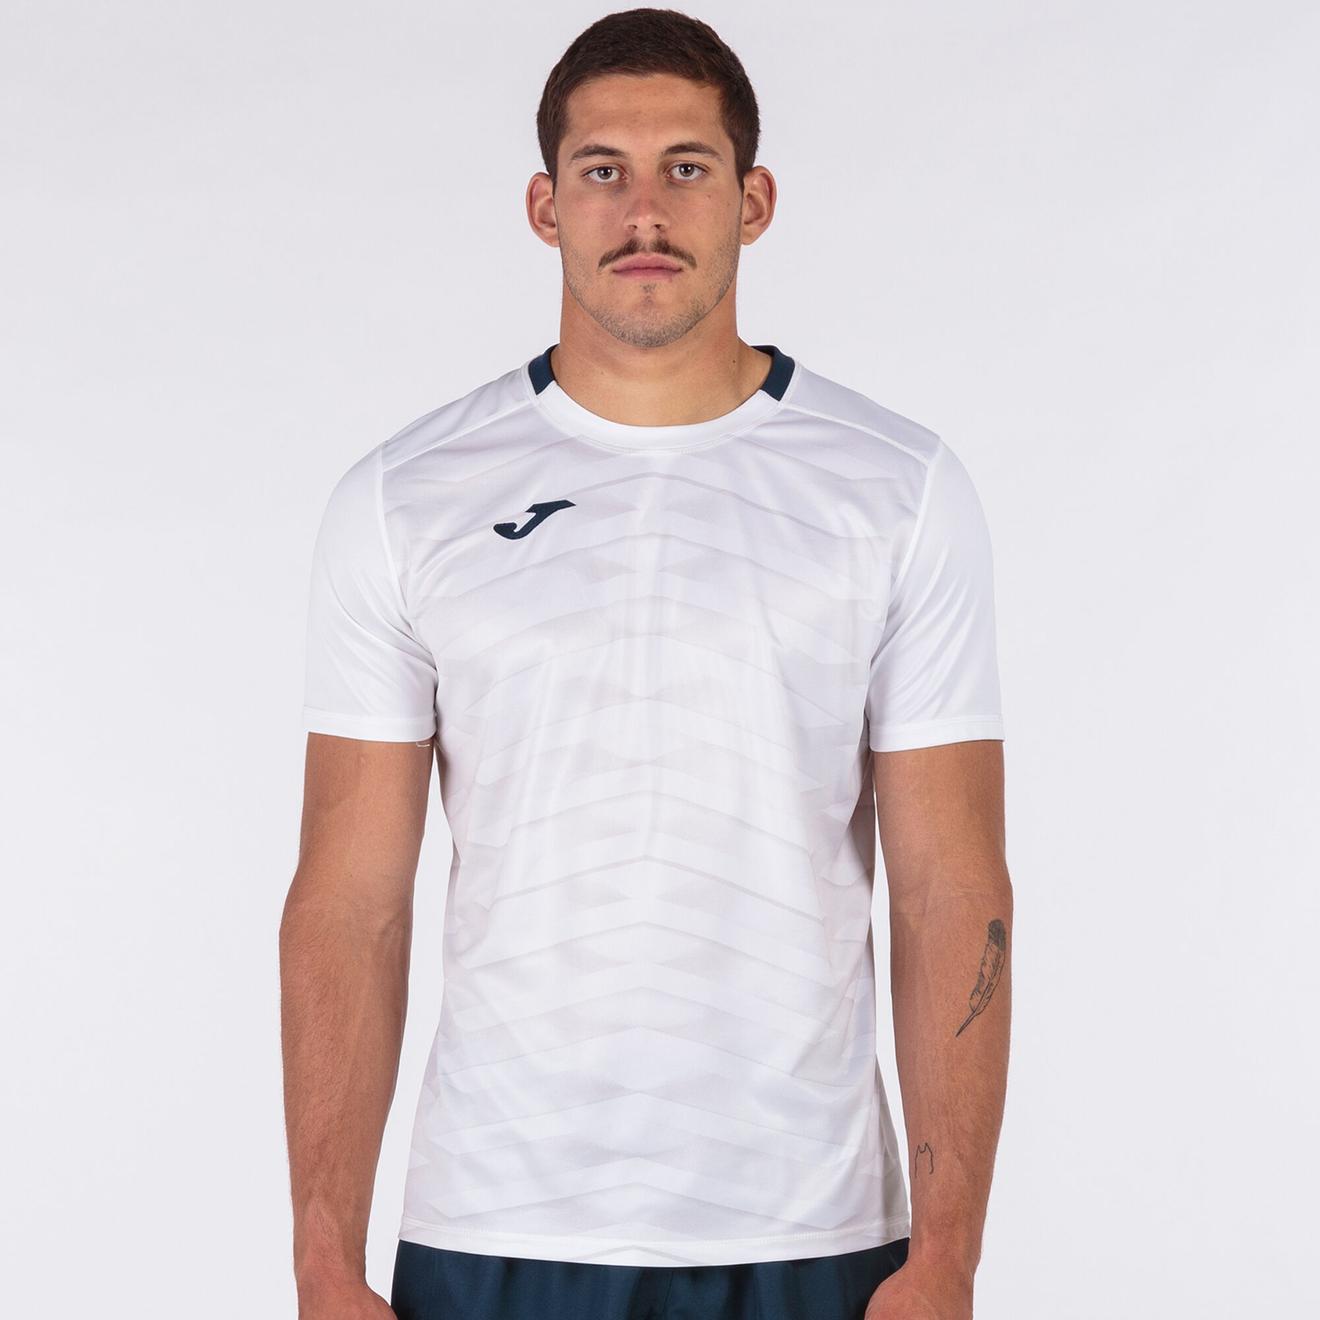 Oferta de Camiseta manga corta hombre Myskin Academy blanco por $287.5 en Joma